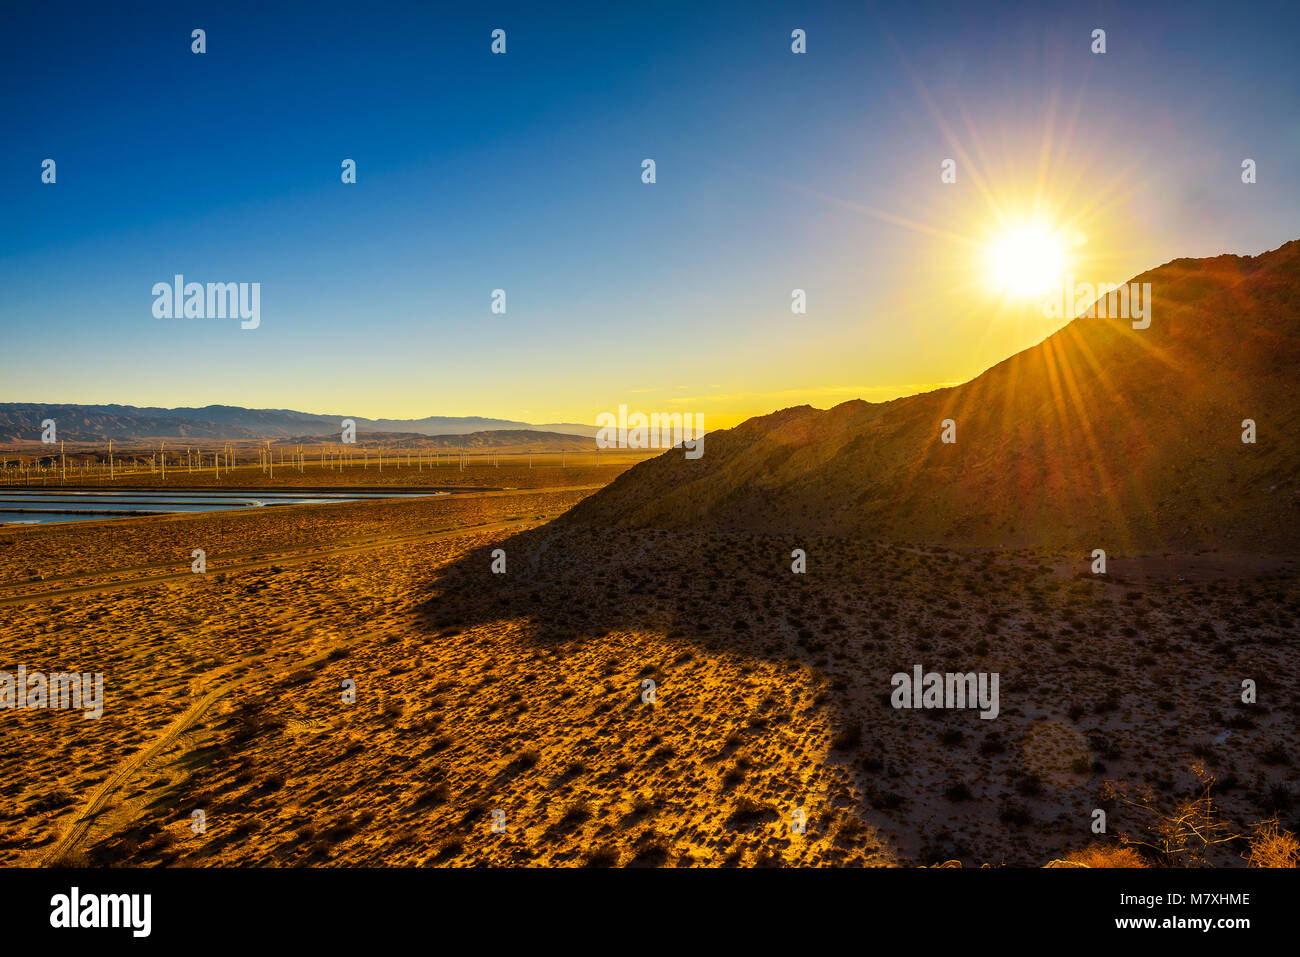 Sunset in Mojave desert near Palm Springs Stock Photo